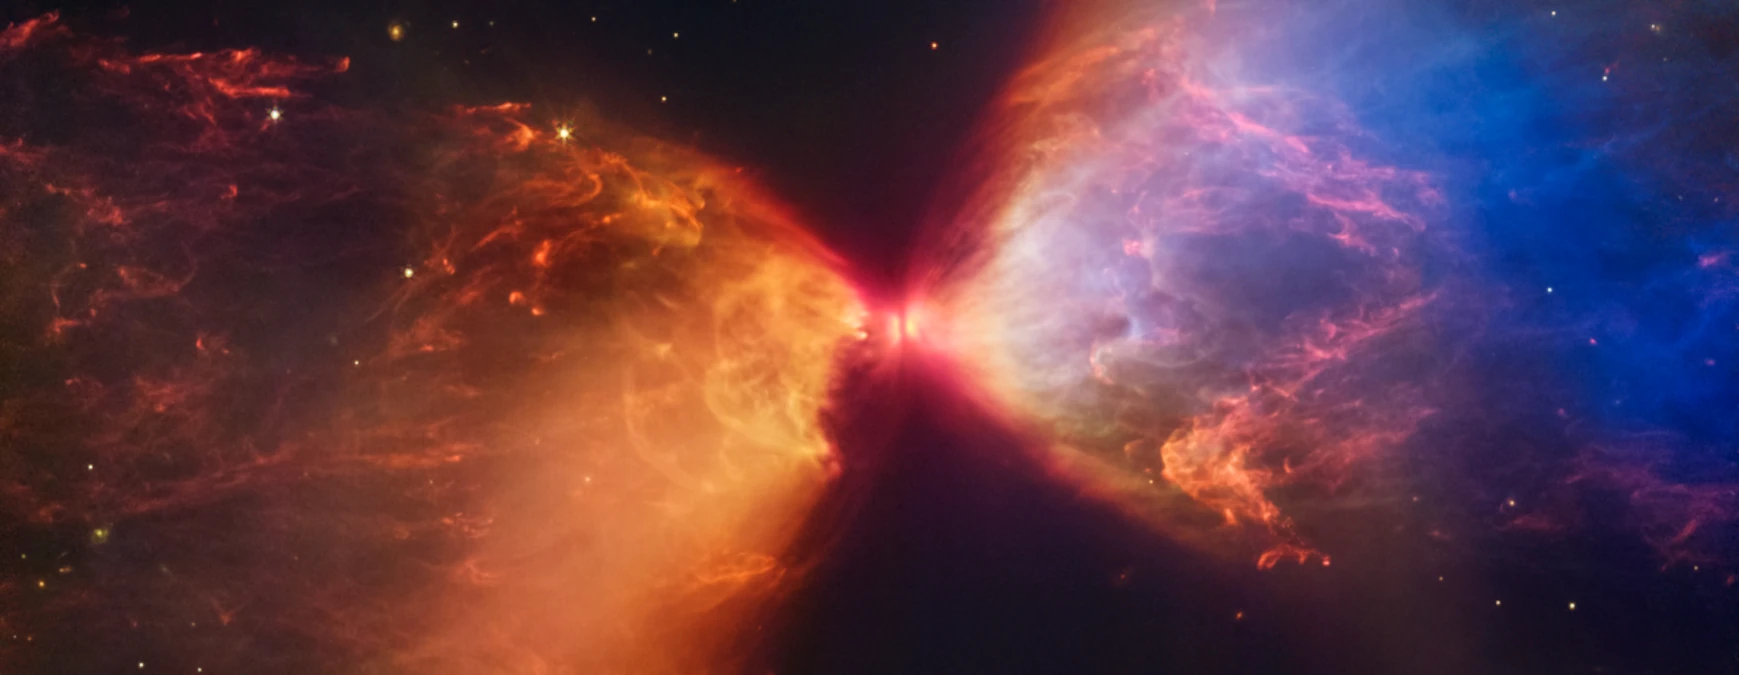 Il telescopio spaziale James Webb ha catturato le immagini della protostella all'interno della nebulosa oscura L1527